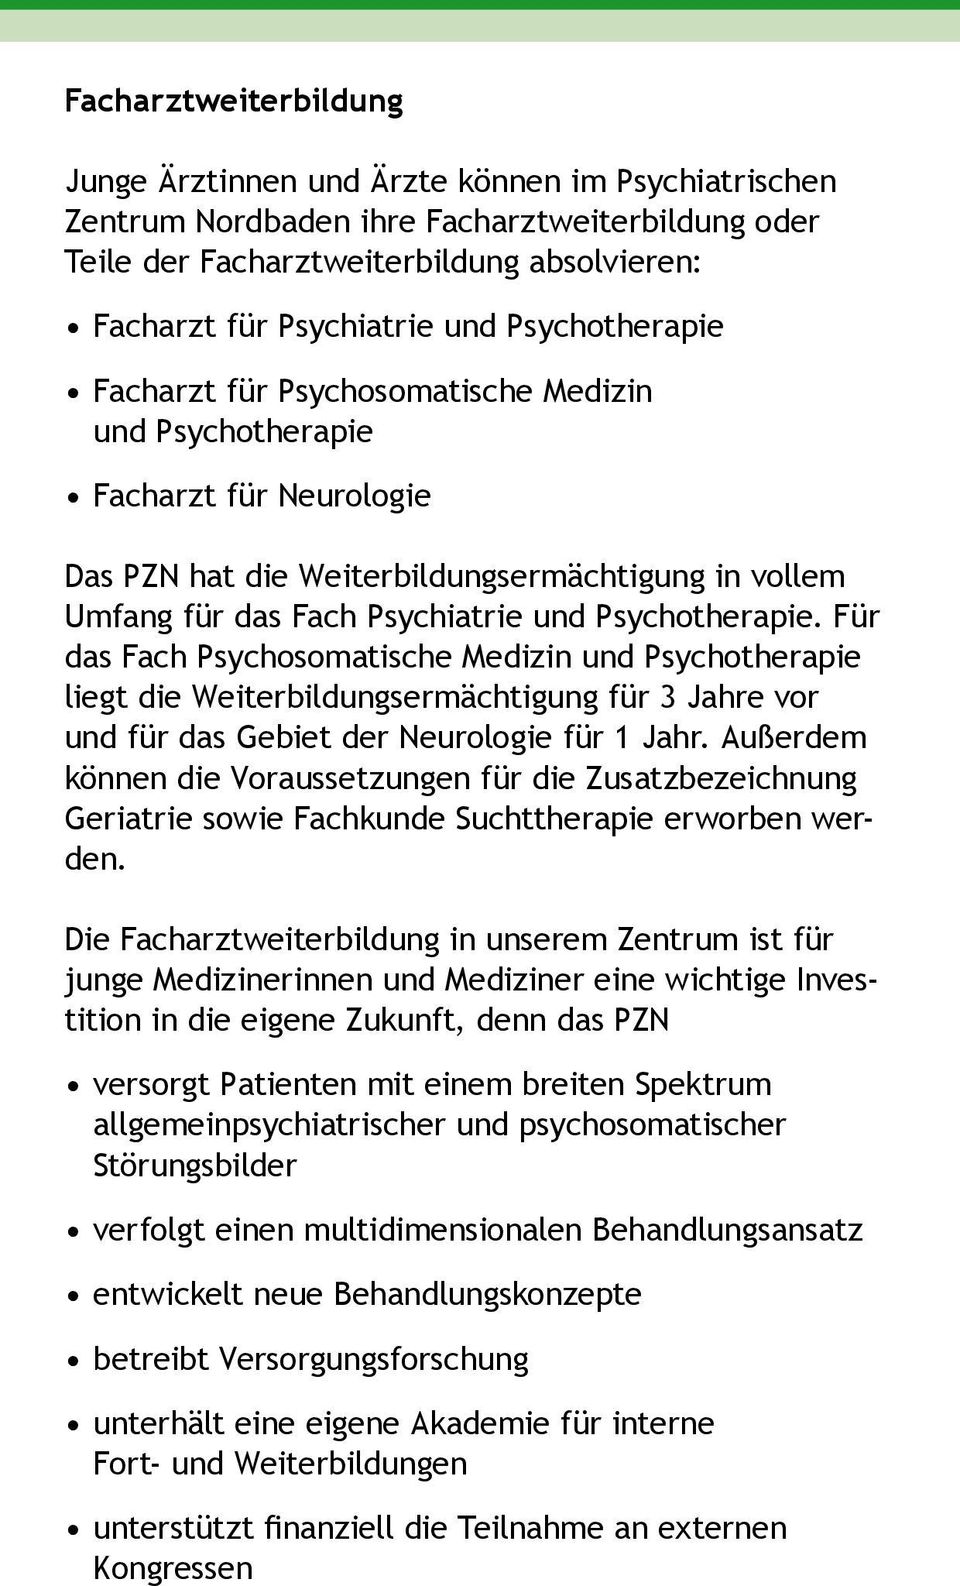 Für das Fach Psychosomatische Medizin und Psychotherapie liegt die Weiterbildungsermächtigung für 3 Jahre vor und für das Gebiet der Neurologie für 1 Jahr.